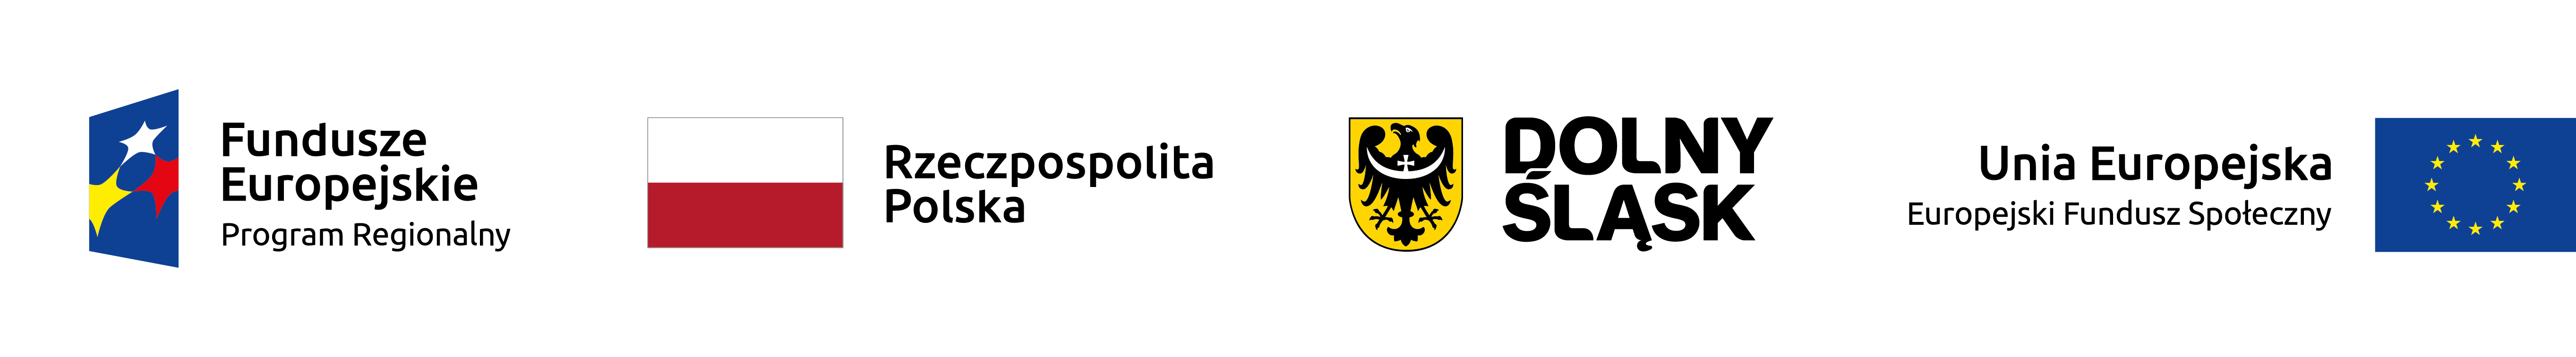 logo programów europejskich, flaga Polski, herb Dolnego Śląska, Flaga Unii Europejskiej